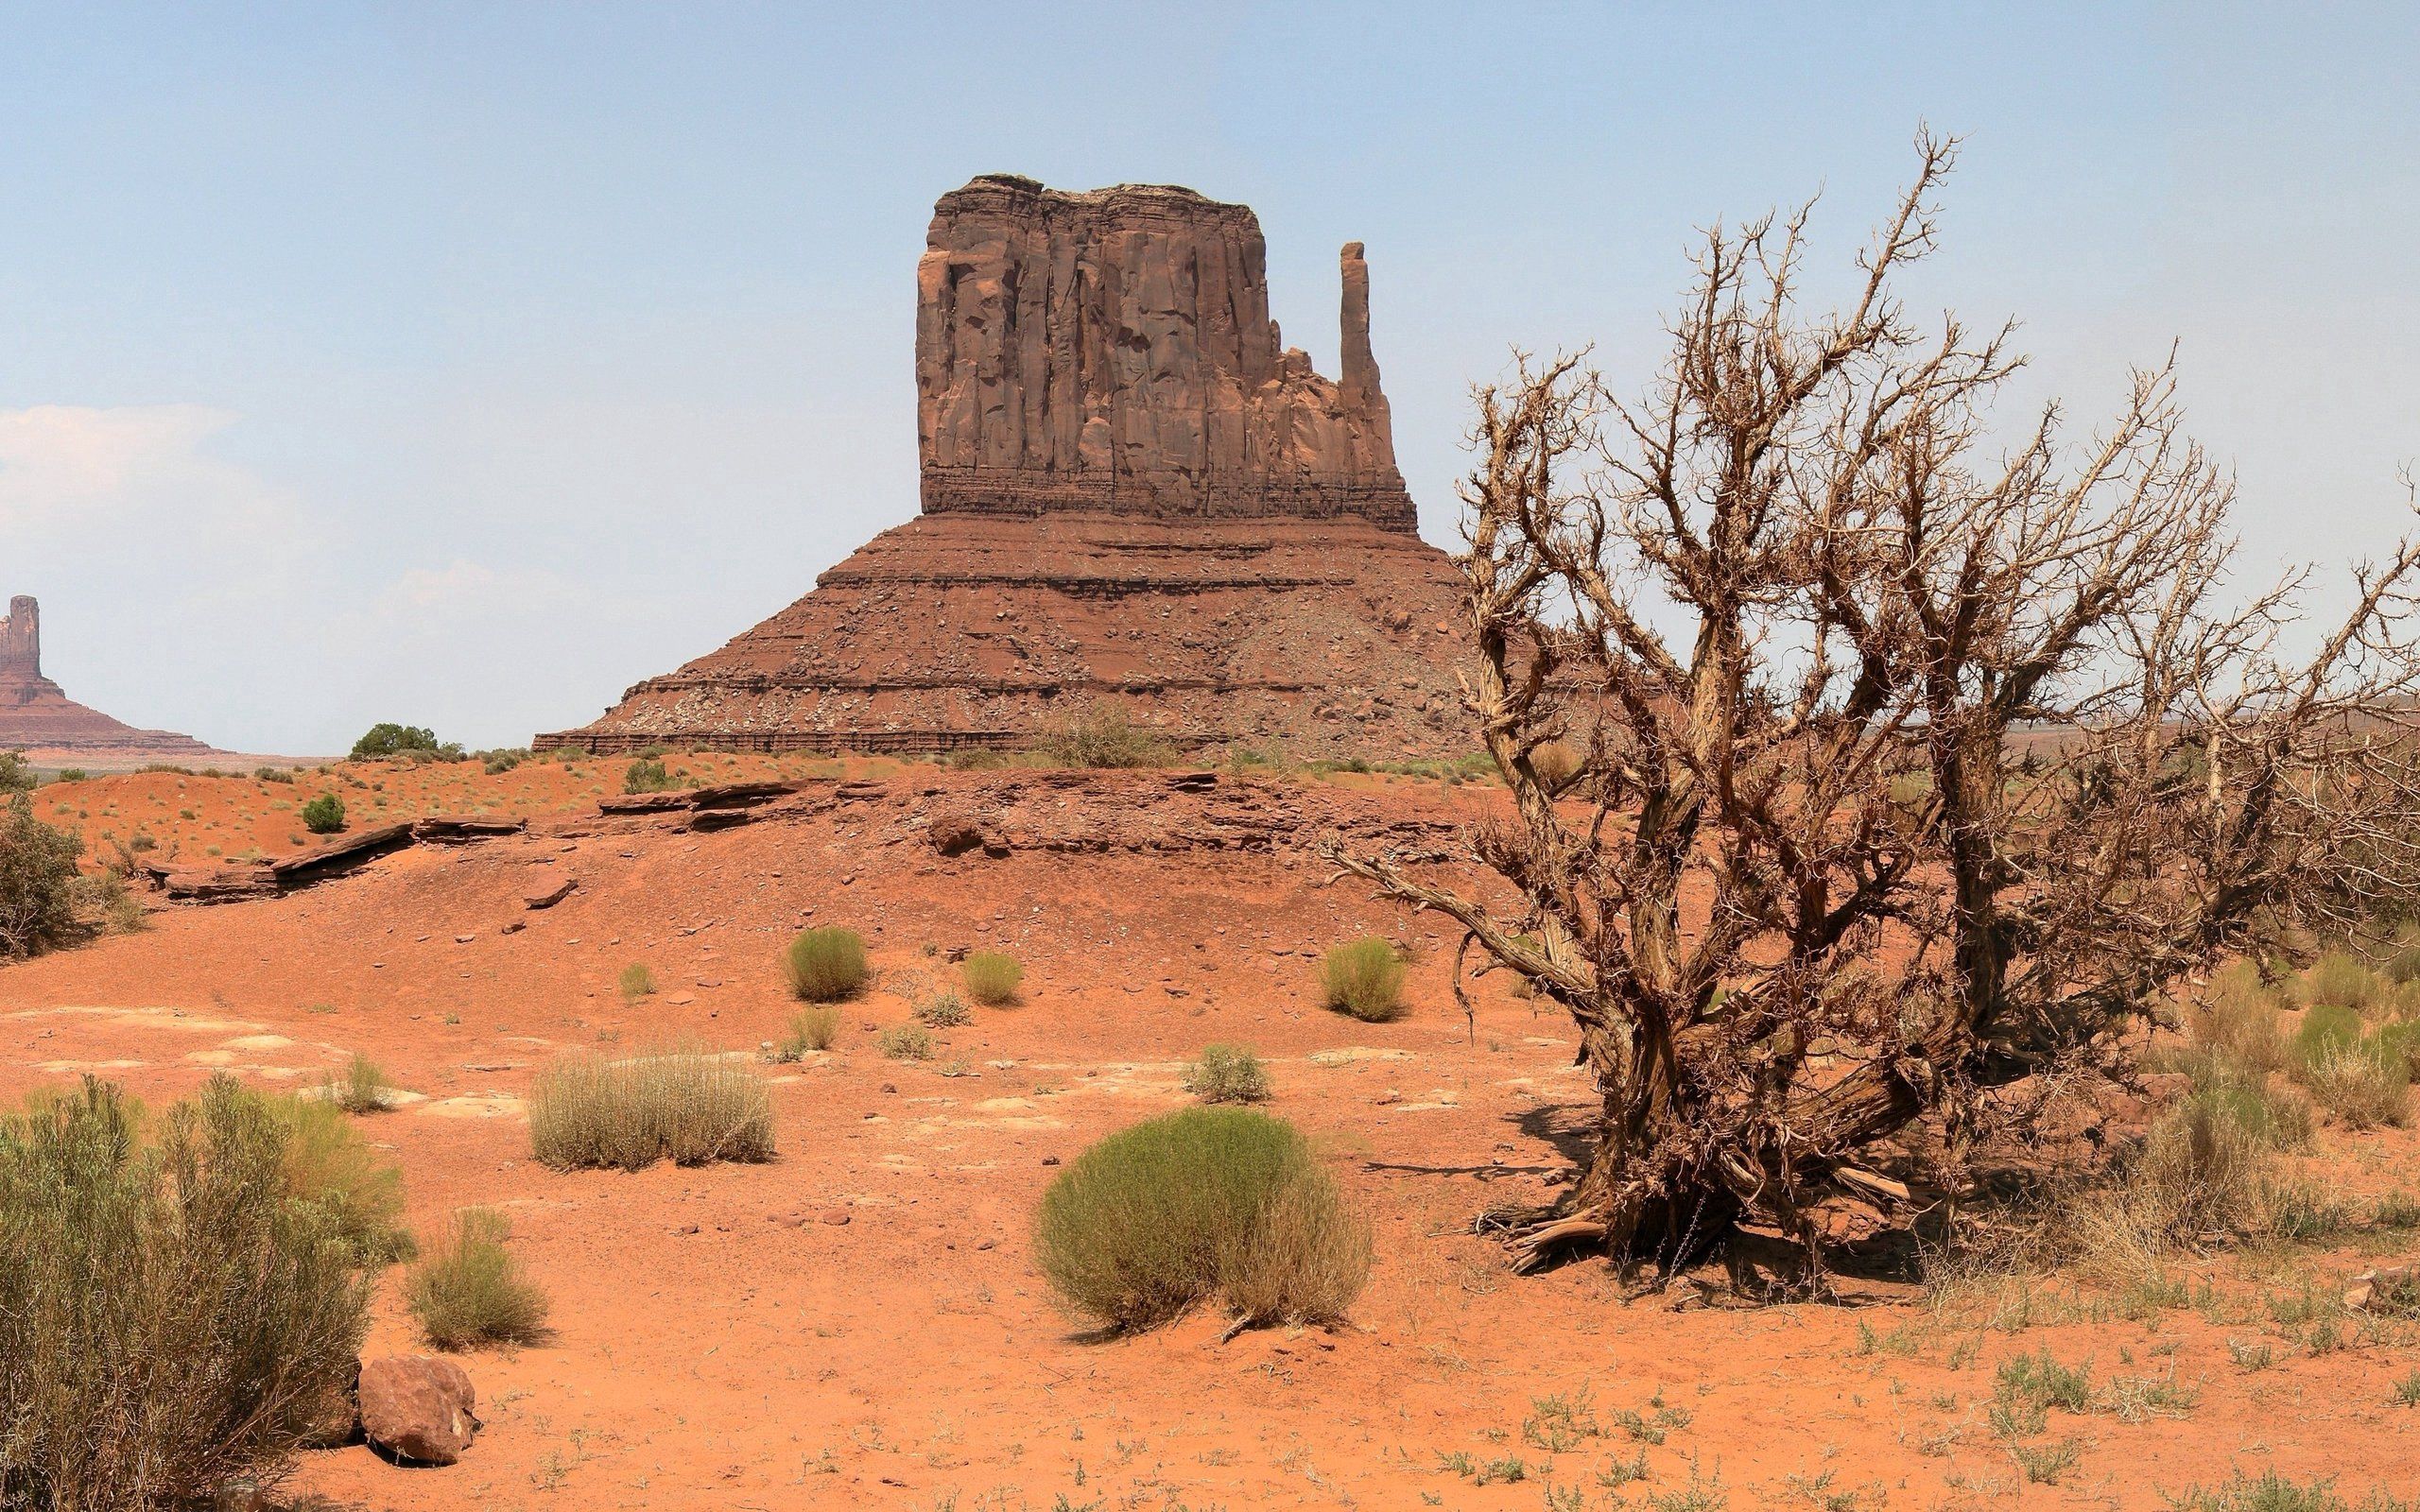 Popular Desert images for mobile phone